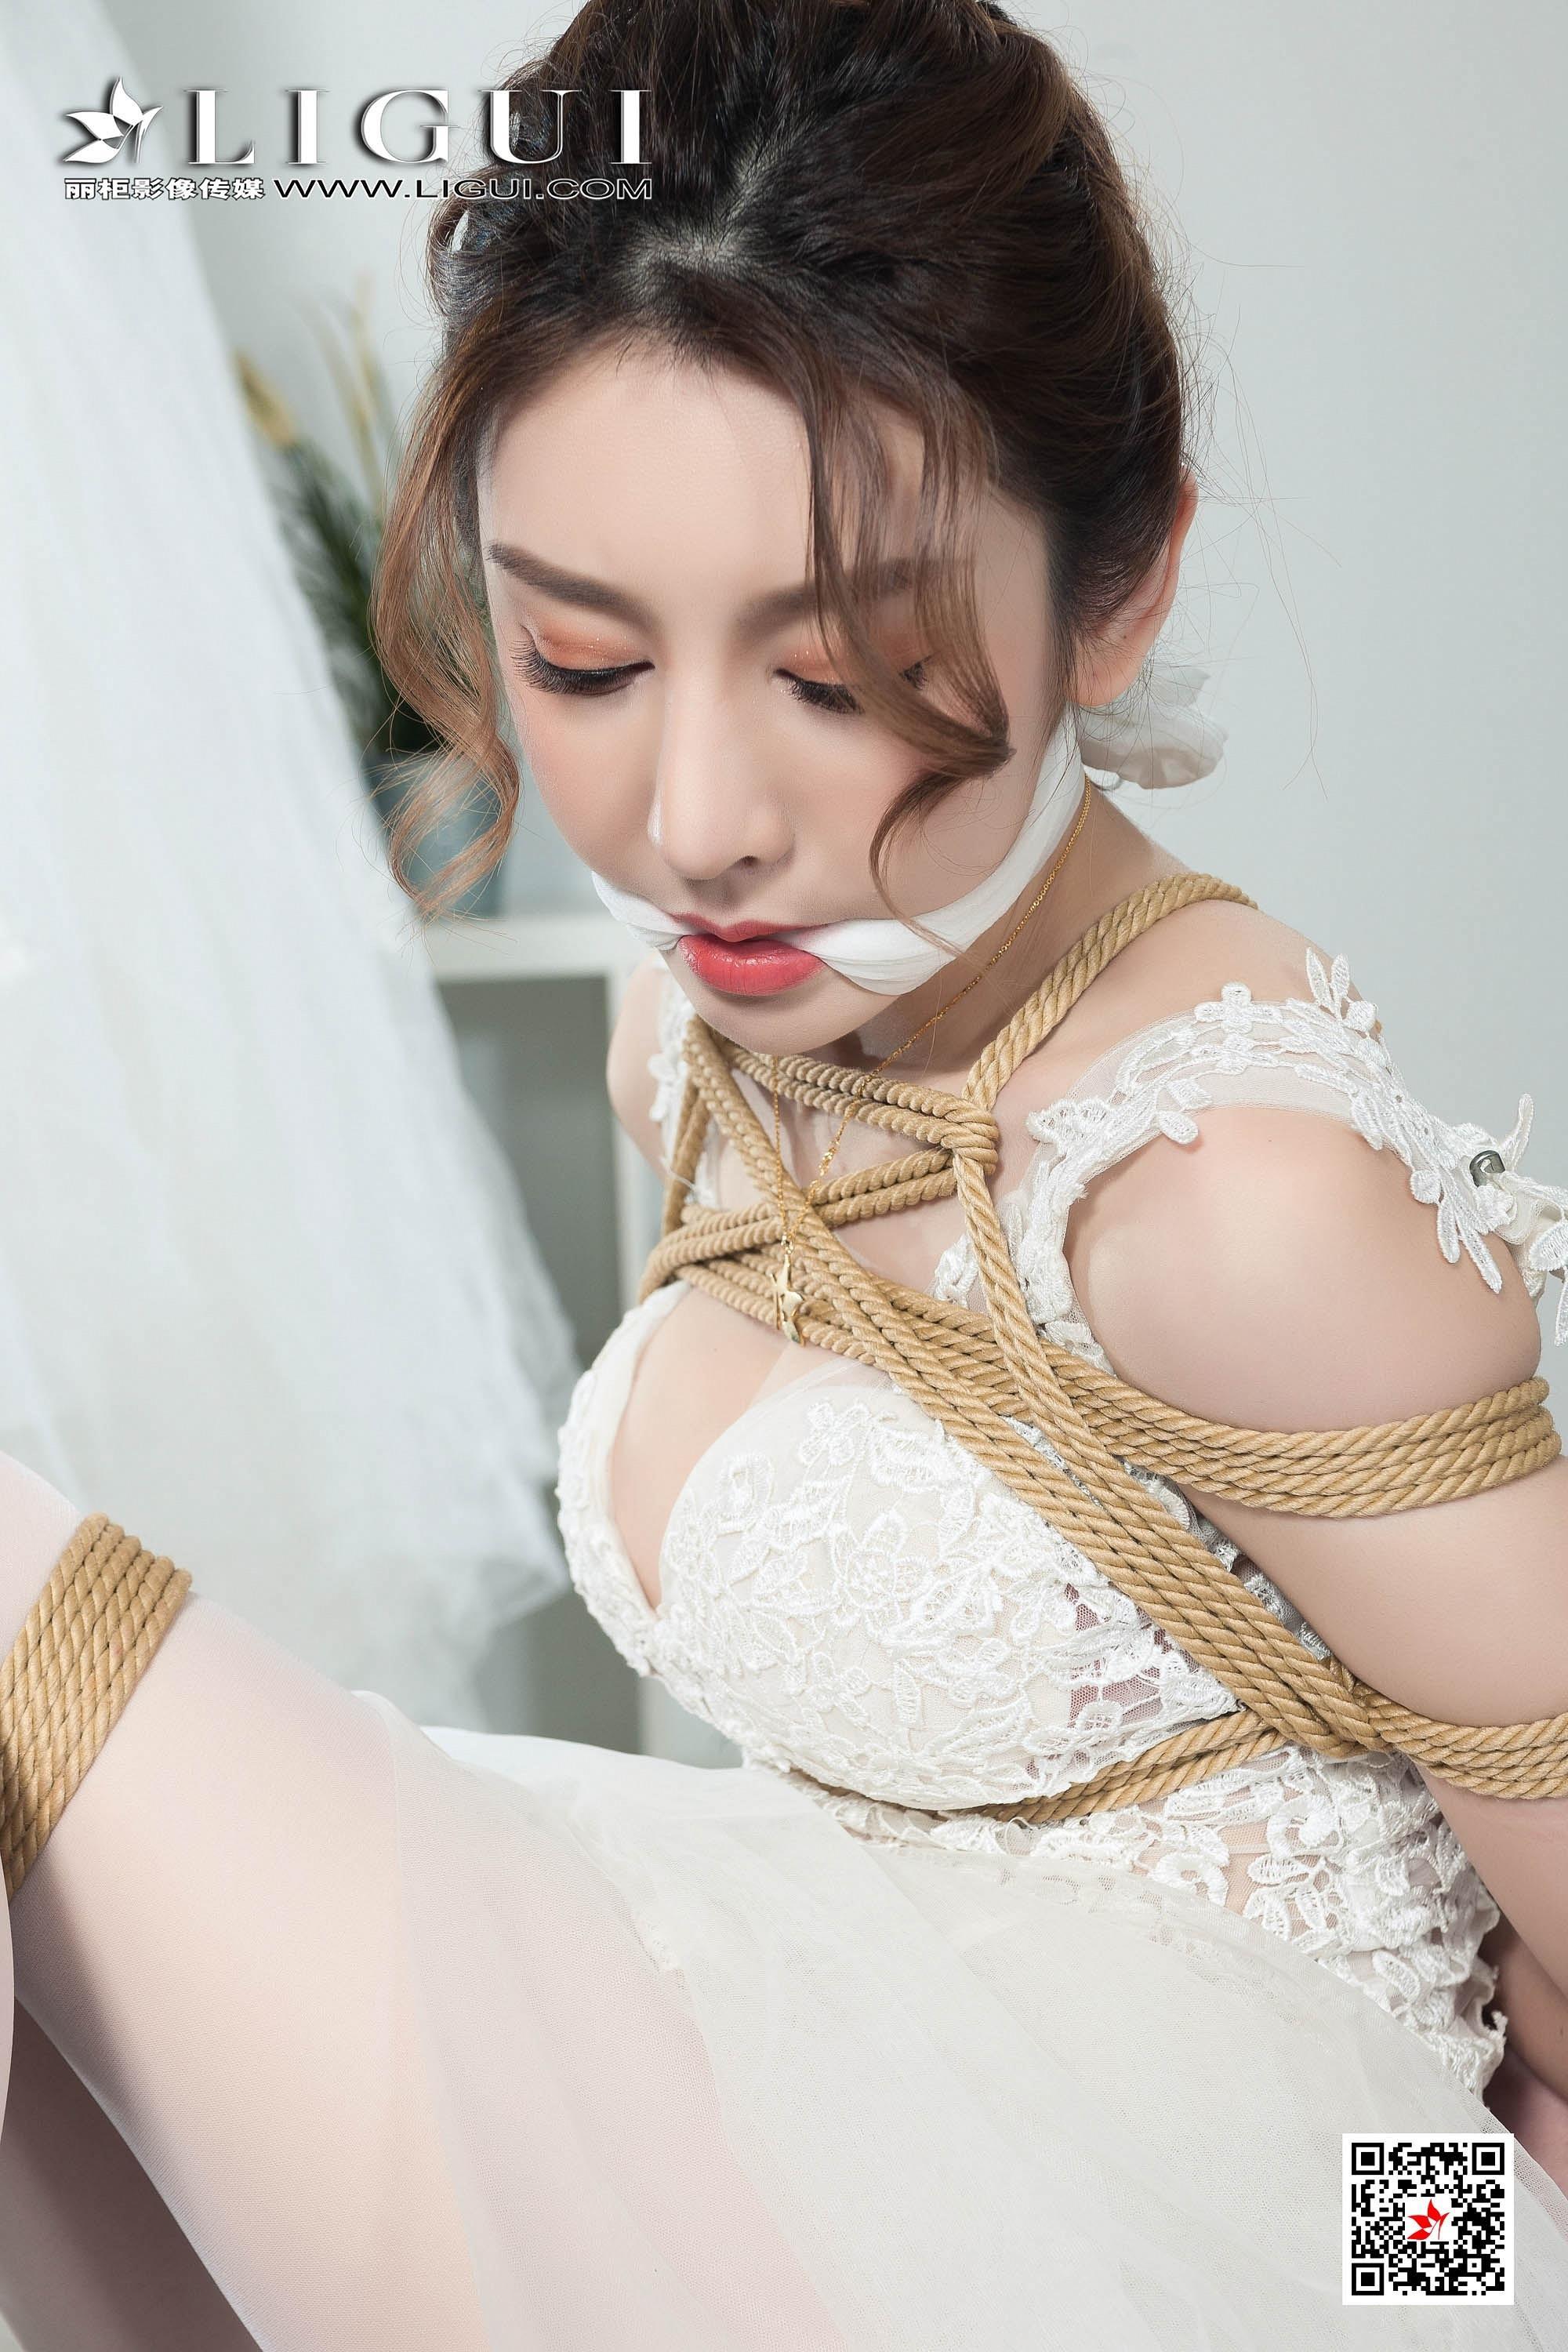 [Ligui丽柜会所]2019-05-31 捆绑束缚性感美女 兔子 白色透视镂空连衣裙加白色丝袜美腿私房写真集,